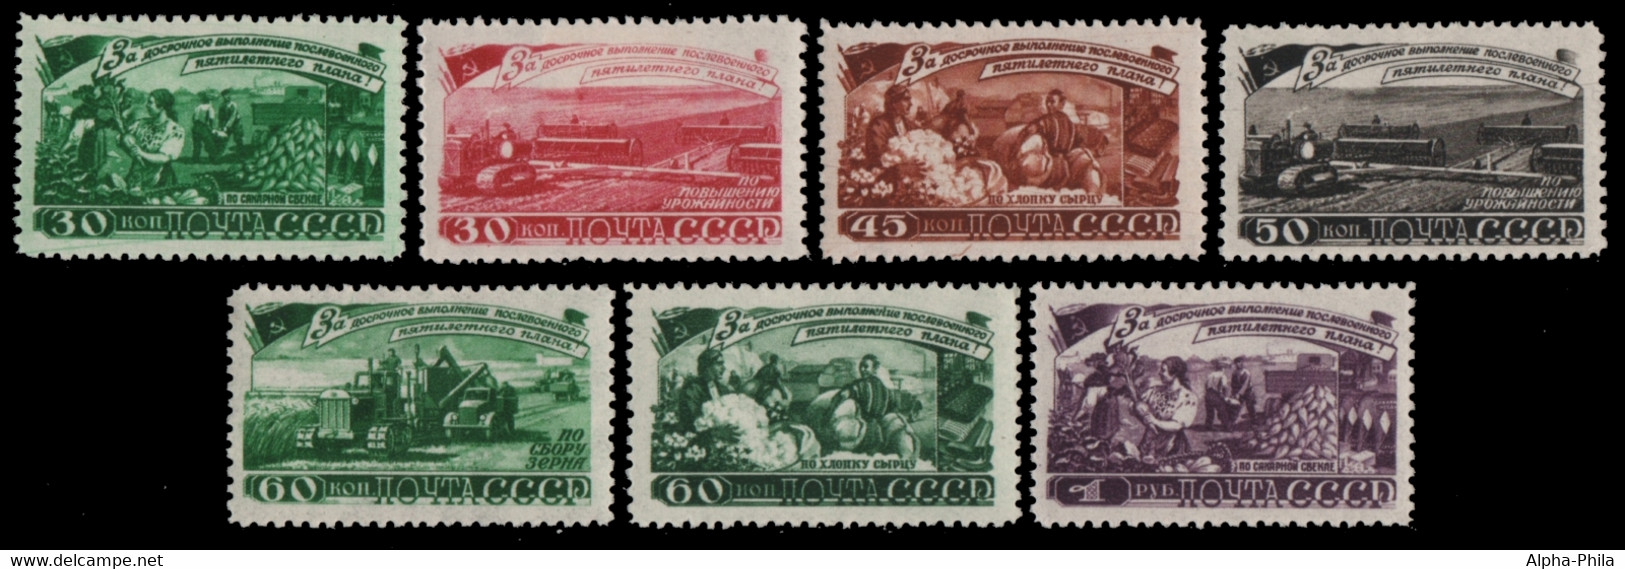 Russia / Sowjetunion 1948 - Mi-Nr. 1229-1235 ** - MNH - Landwirtschaft - Ungebraucht